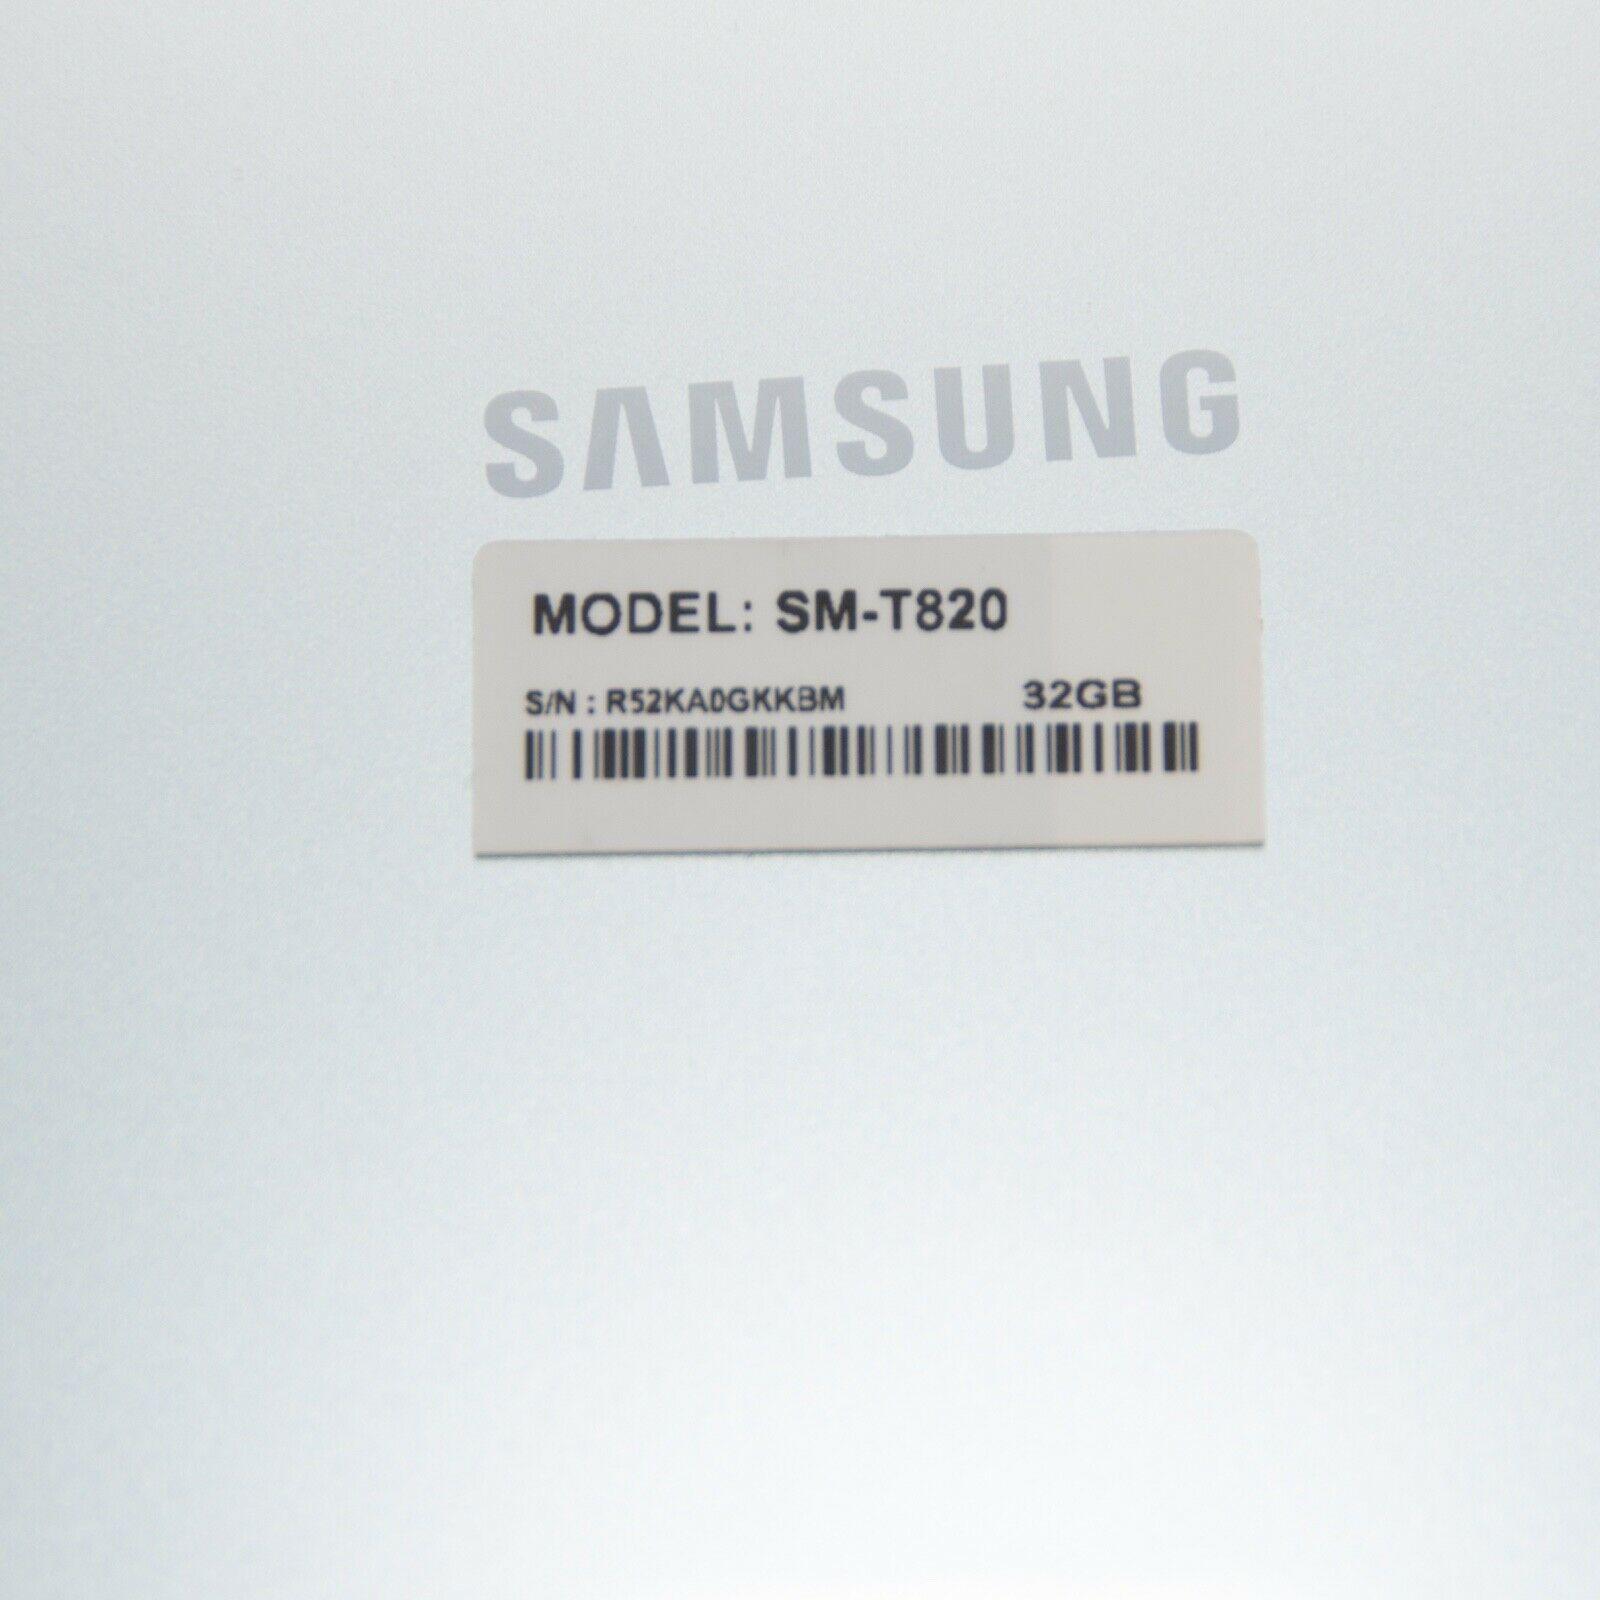 Samsung Galaxy Tab S3 32GB, Wi-Fi, 9.7in - Silver - ipawnishop.com